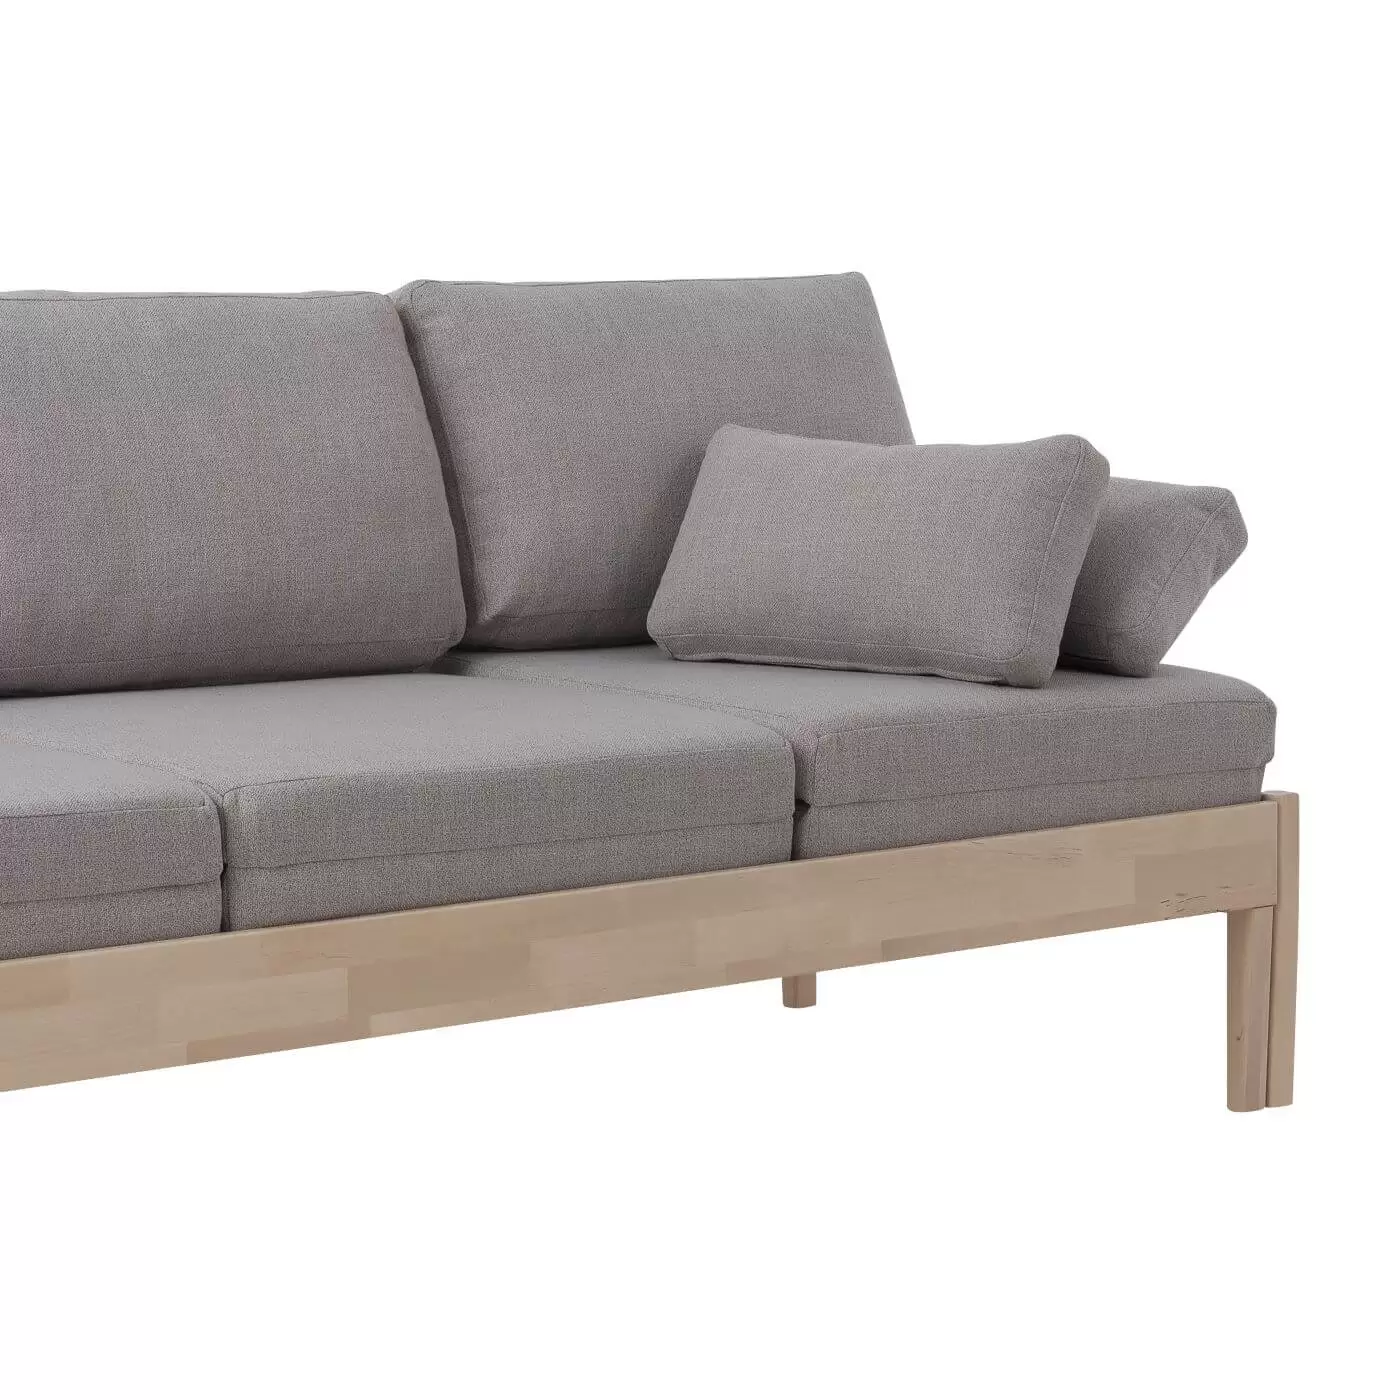 Sofa bez boków NOEL z drewna brzozy północnej na wysokich nóżkach. Fragment z jasno szarym materacem i 2 poduszkami